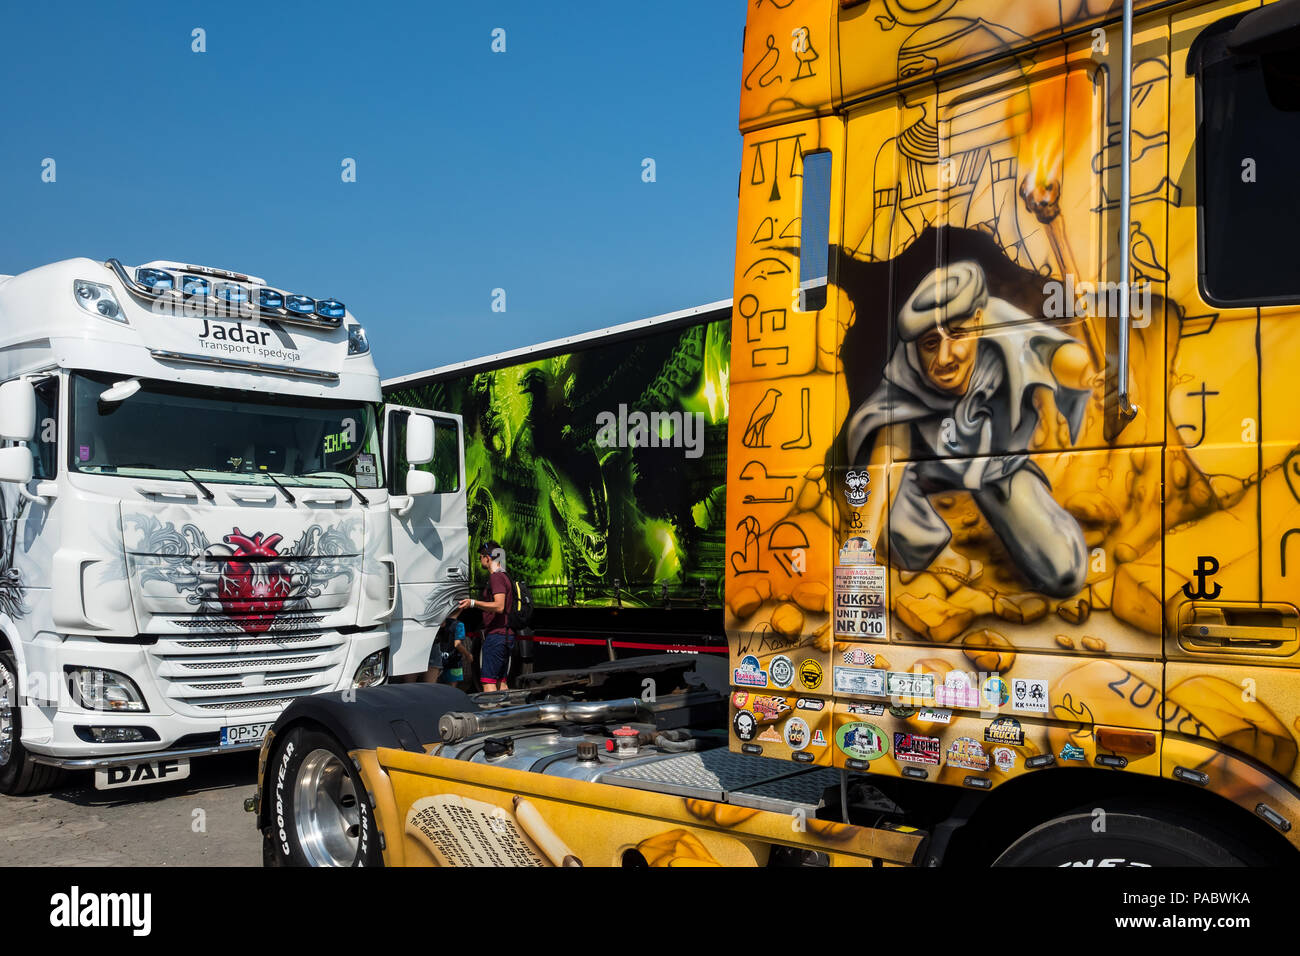 Master Truck Show 20-22.07. 2018 Polonia, Opole, Polska Nowa Wieś. Cabina  de camión pintada con antiguos símbolos egipcios Fotografía de stock - Alamy